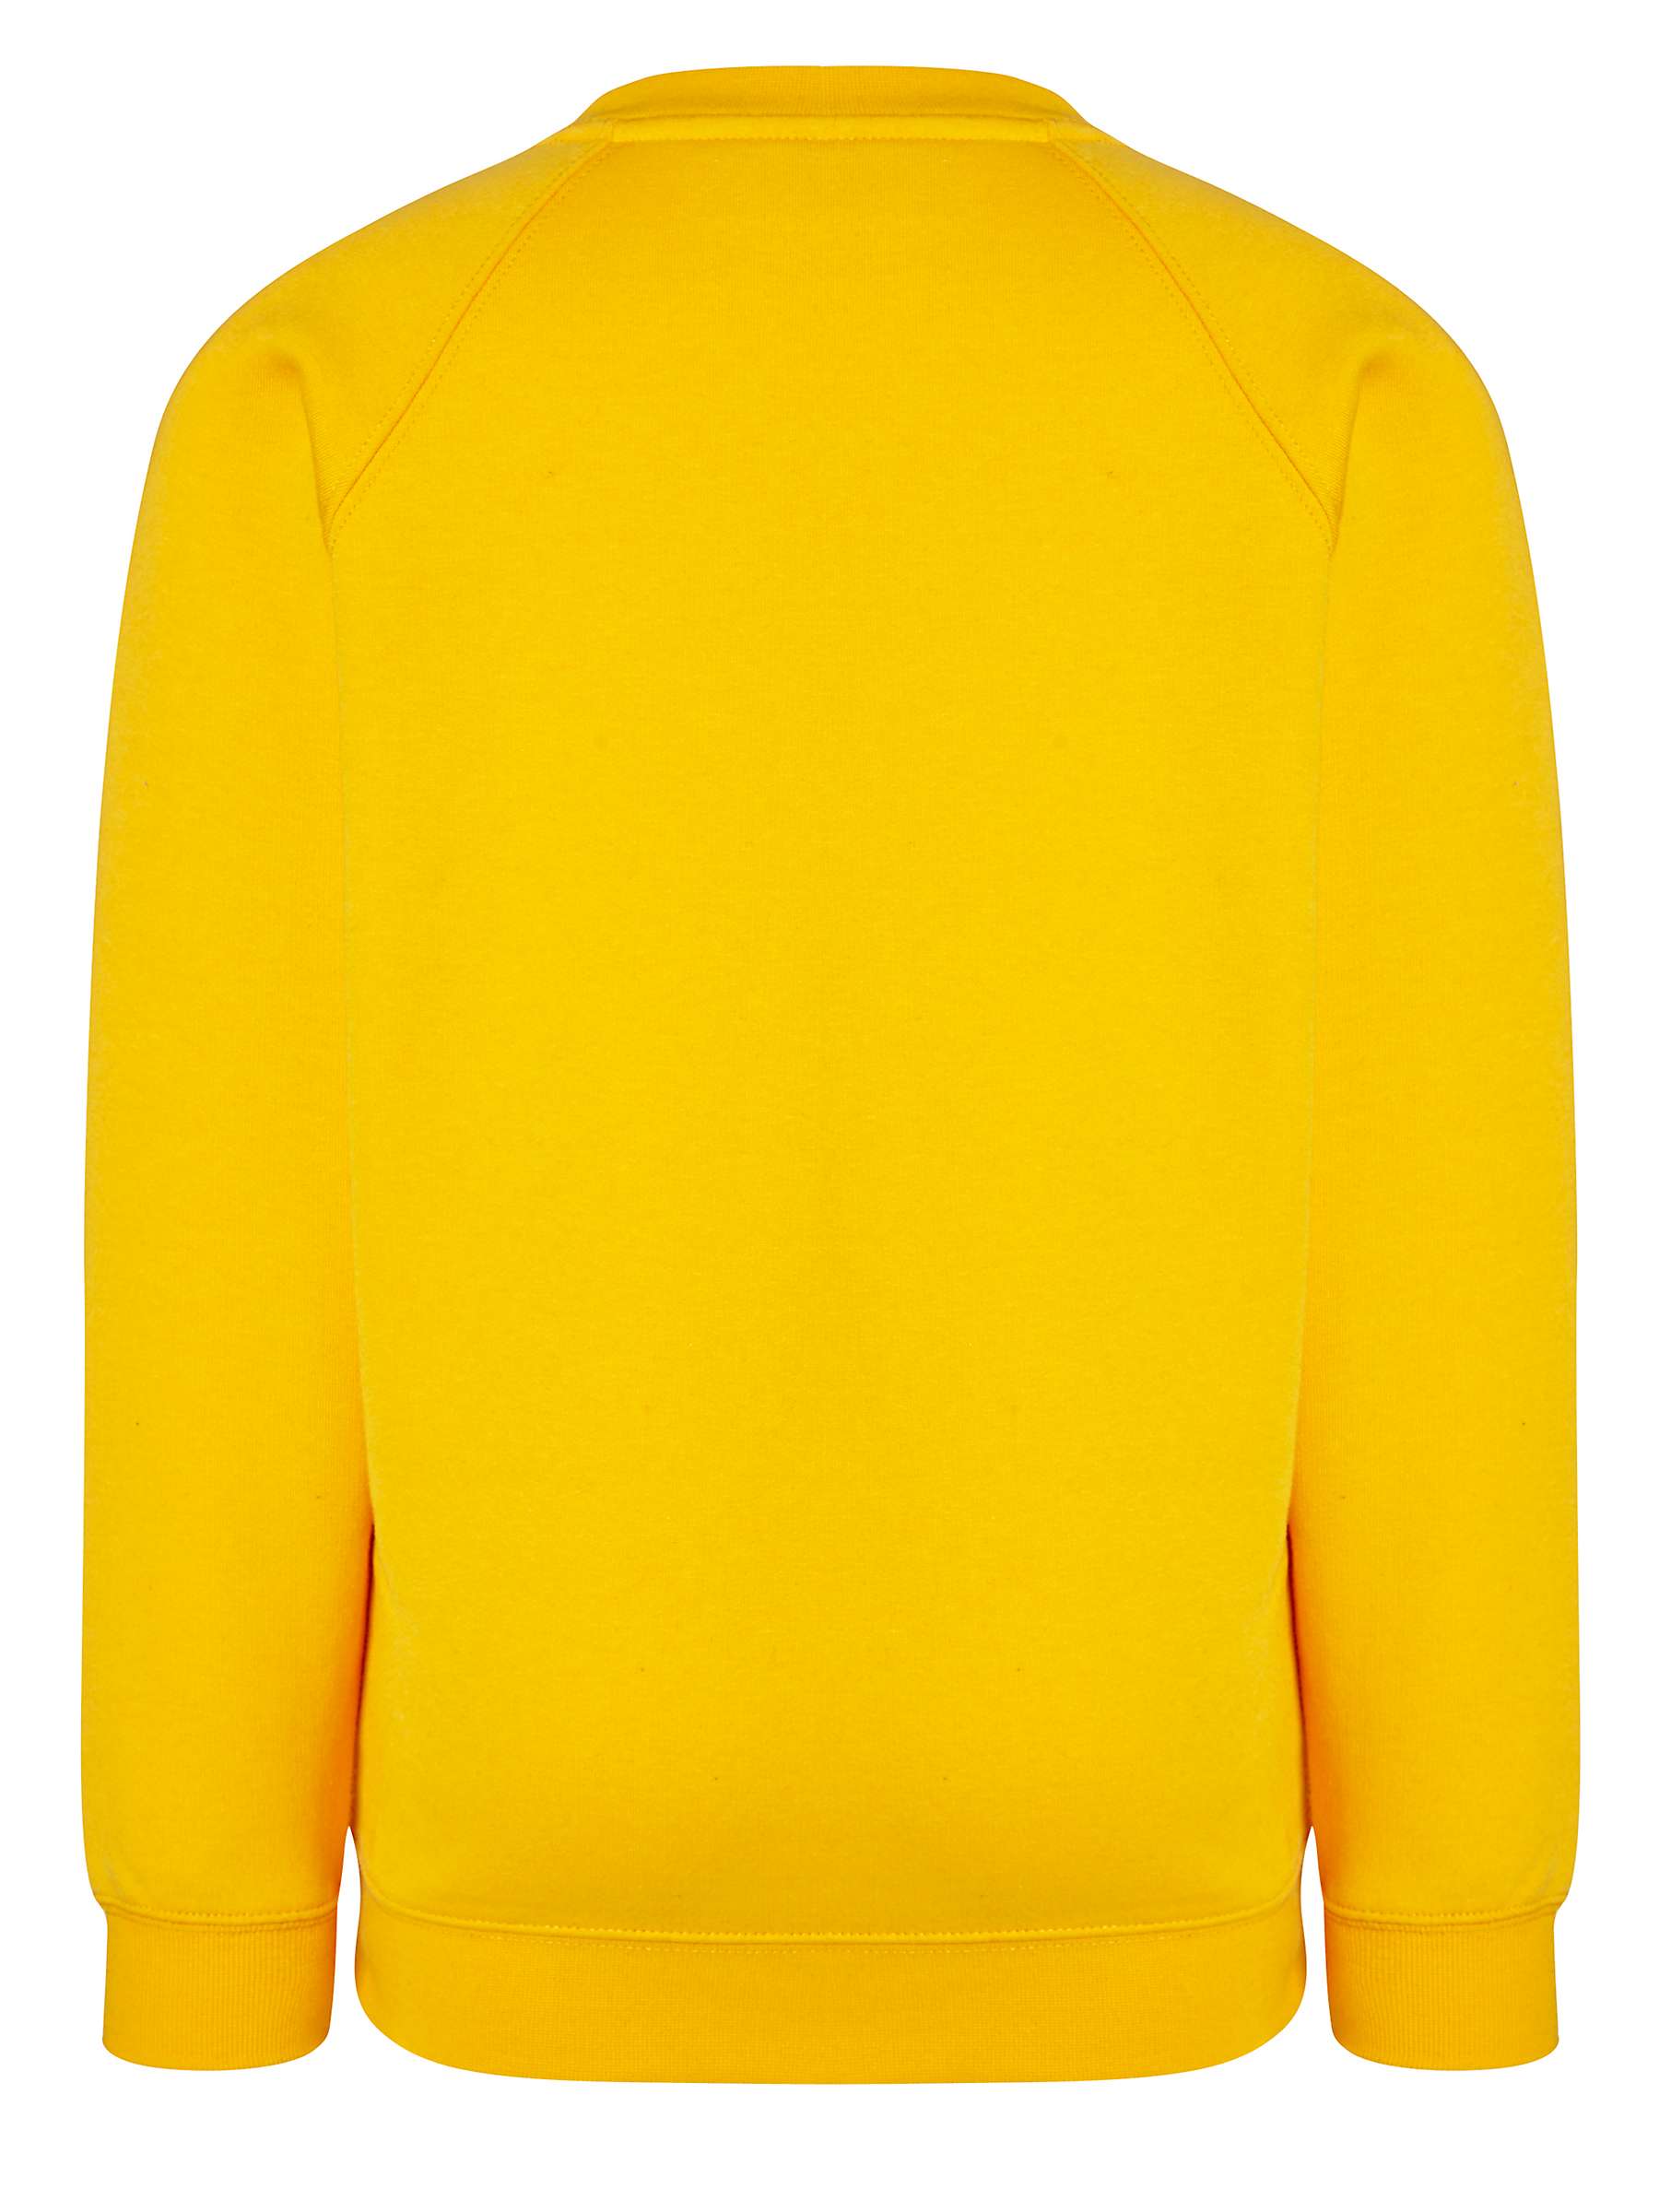 Buy Colfe's School Unisex Sweatshirt Online at johnlewis.com